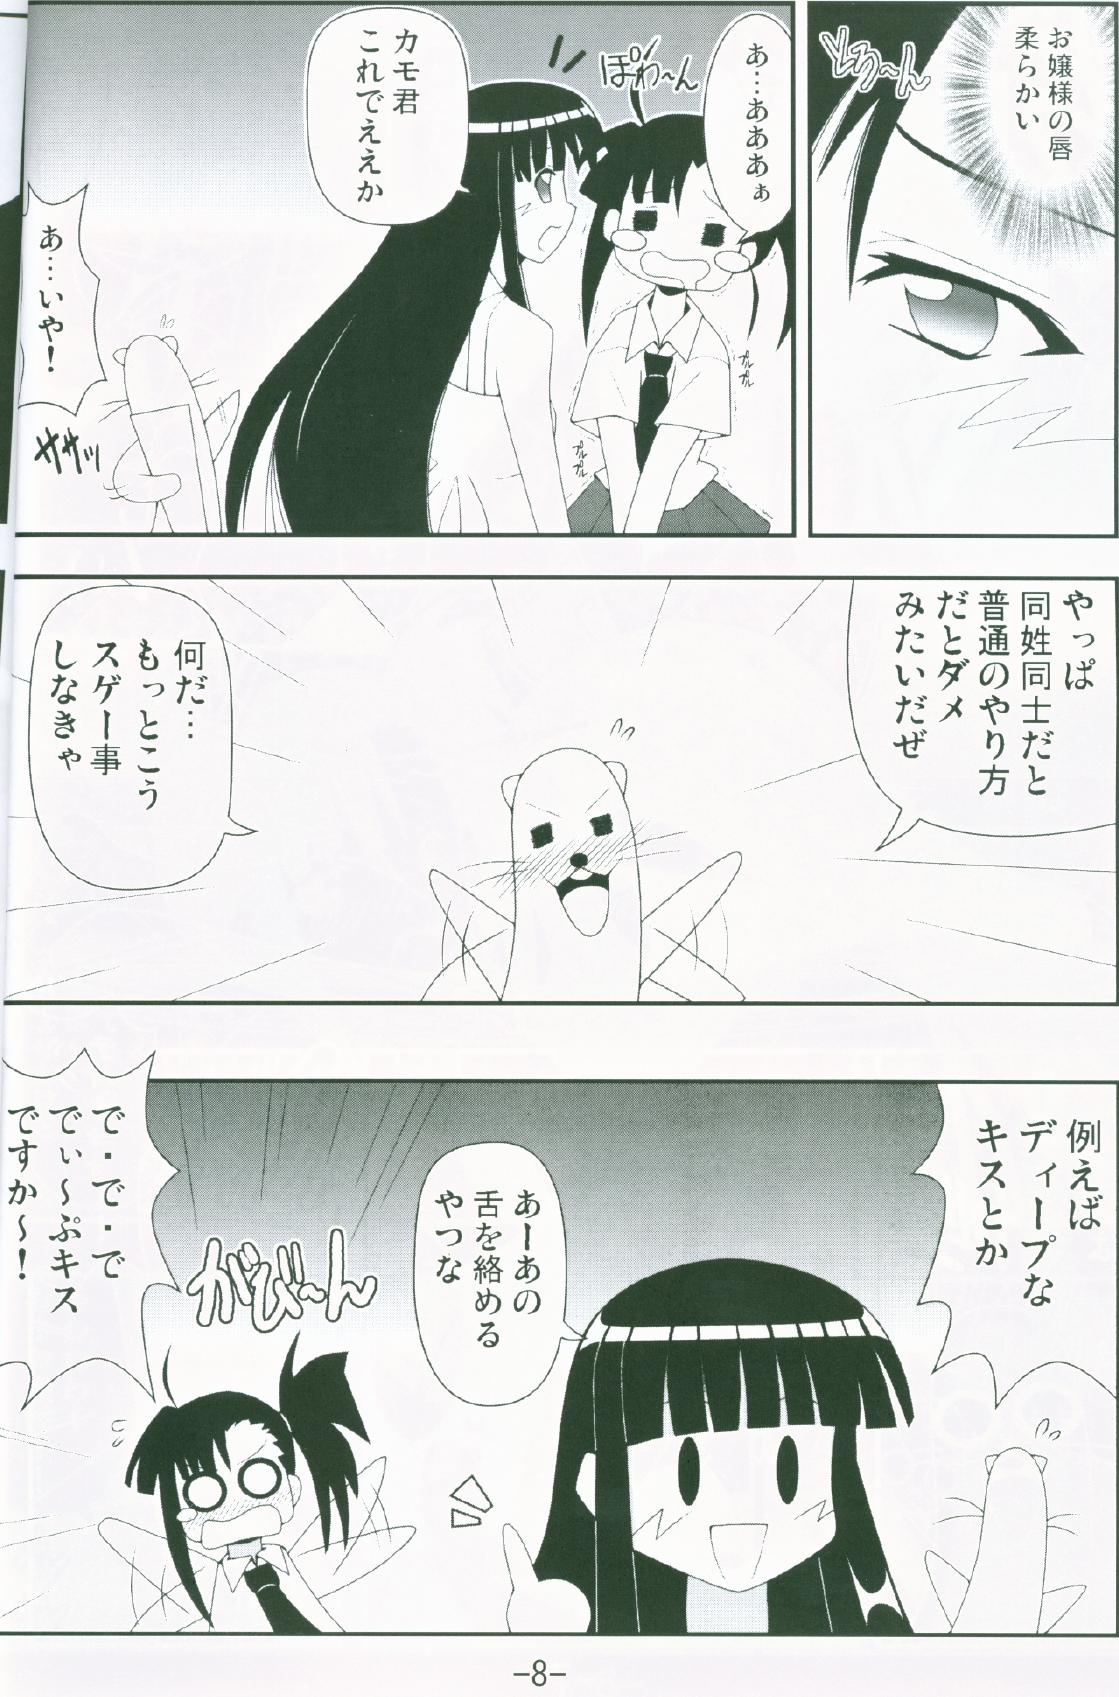 Milfs Gurimaga ~ Yamato Shiko - Mahou sensei negima Oldyoung - Page 6